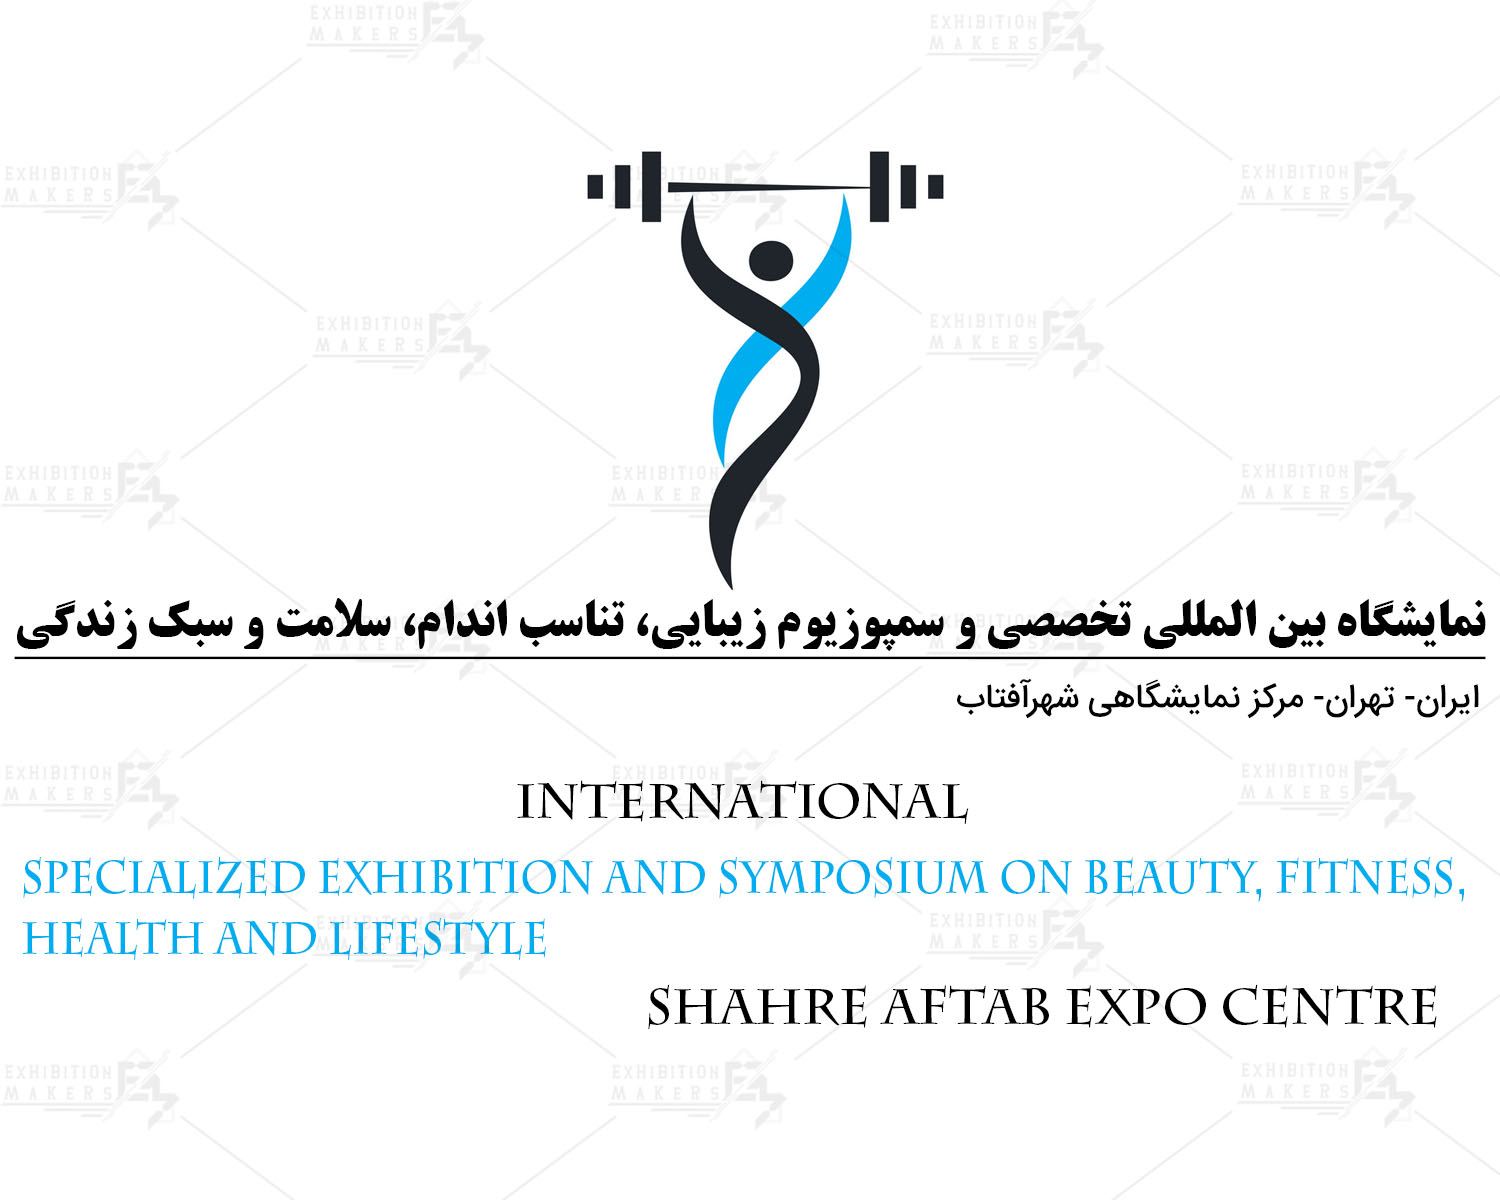 نمایشگاه بین المللی تخصصی و سمپوزیوم زیبایی، تناسب اندام، سلامت و سبک زندگی ایران تهران